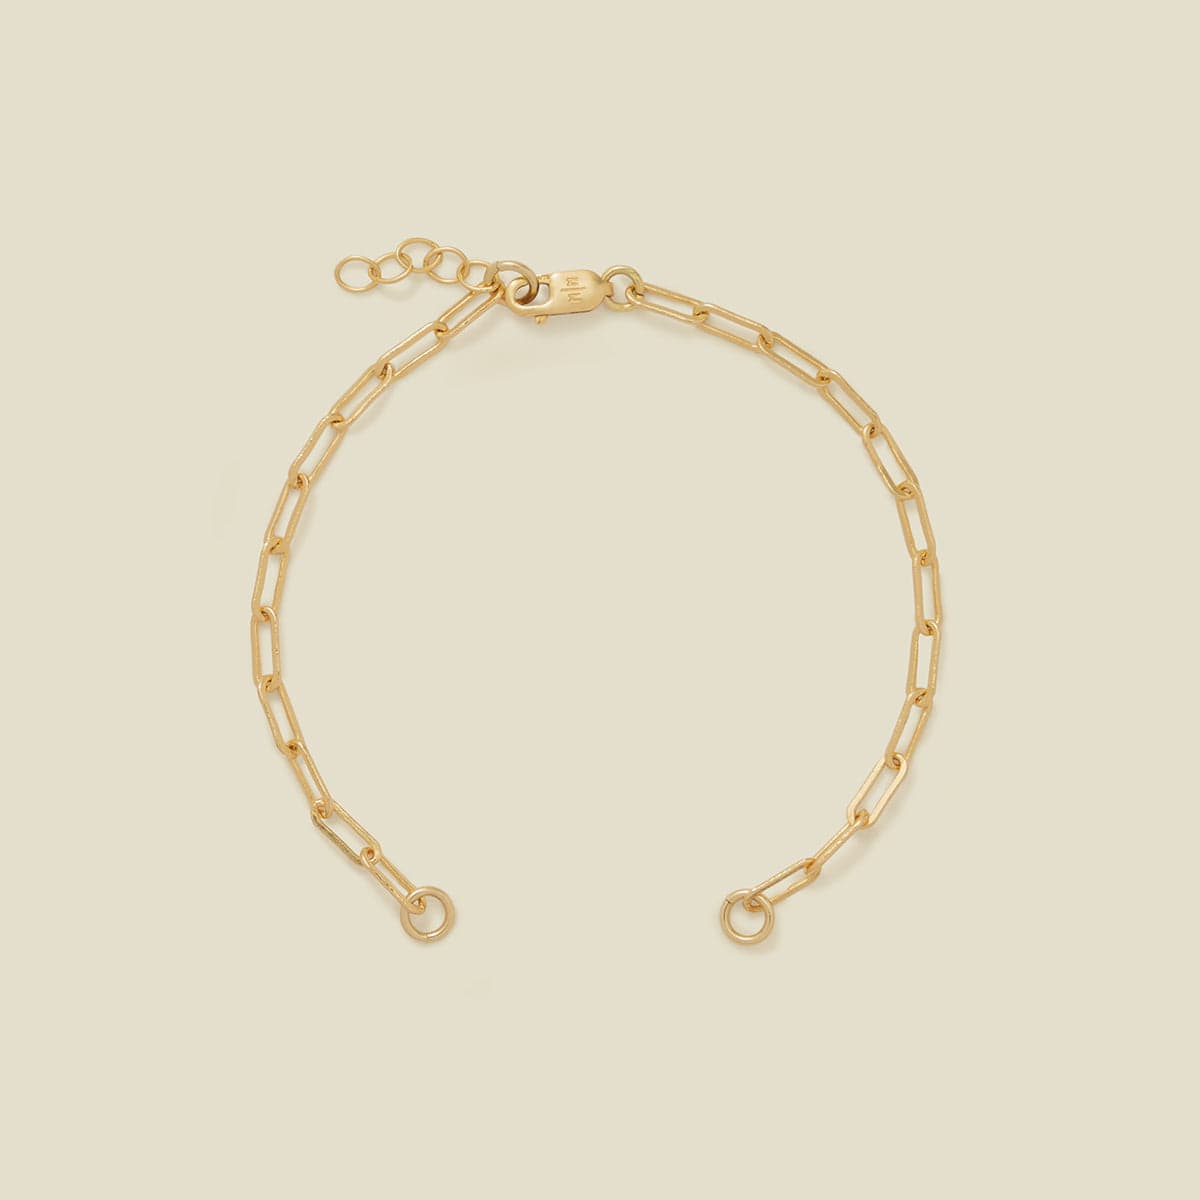 Jude Charm Bracelet Gold Filled / Without Link Lock / 6" Bracelet